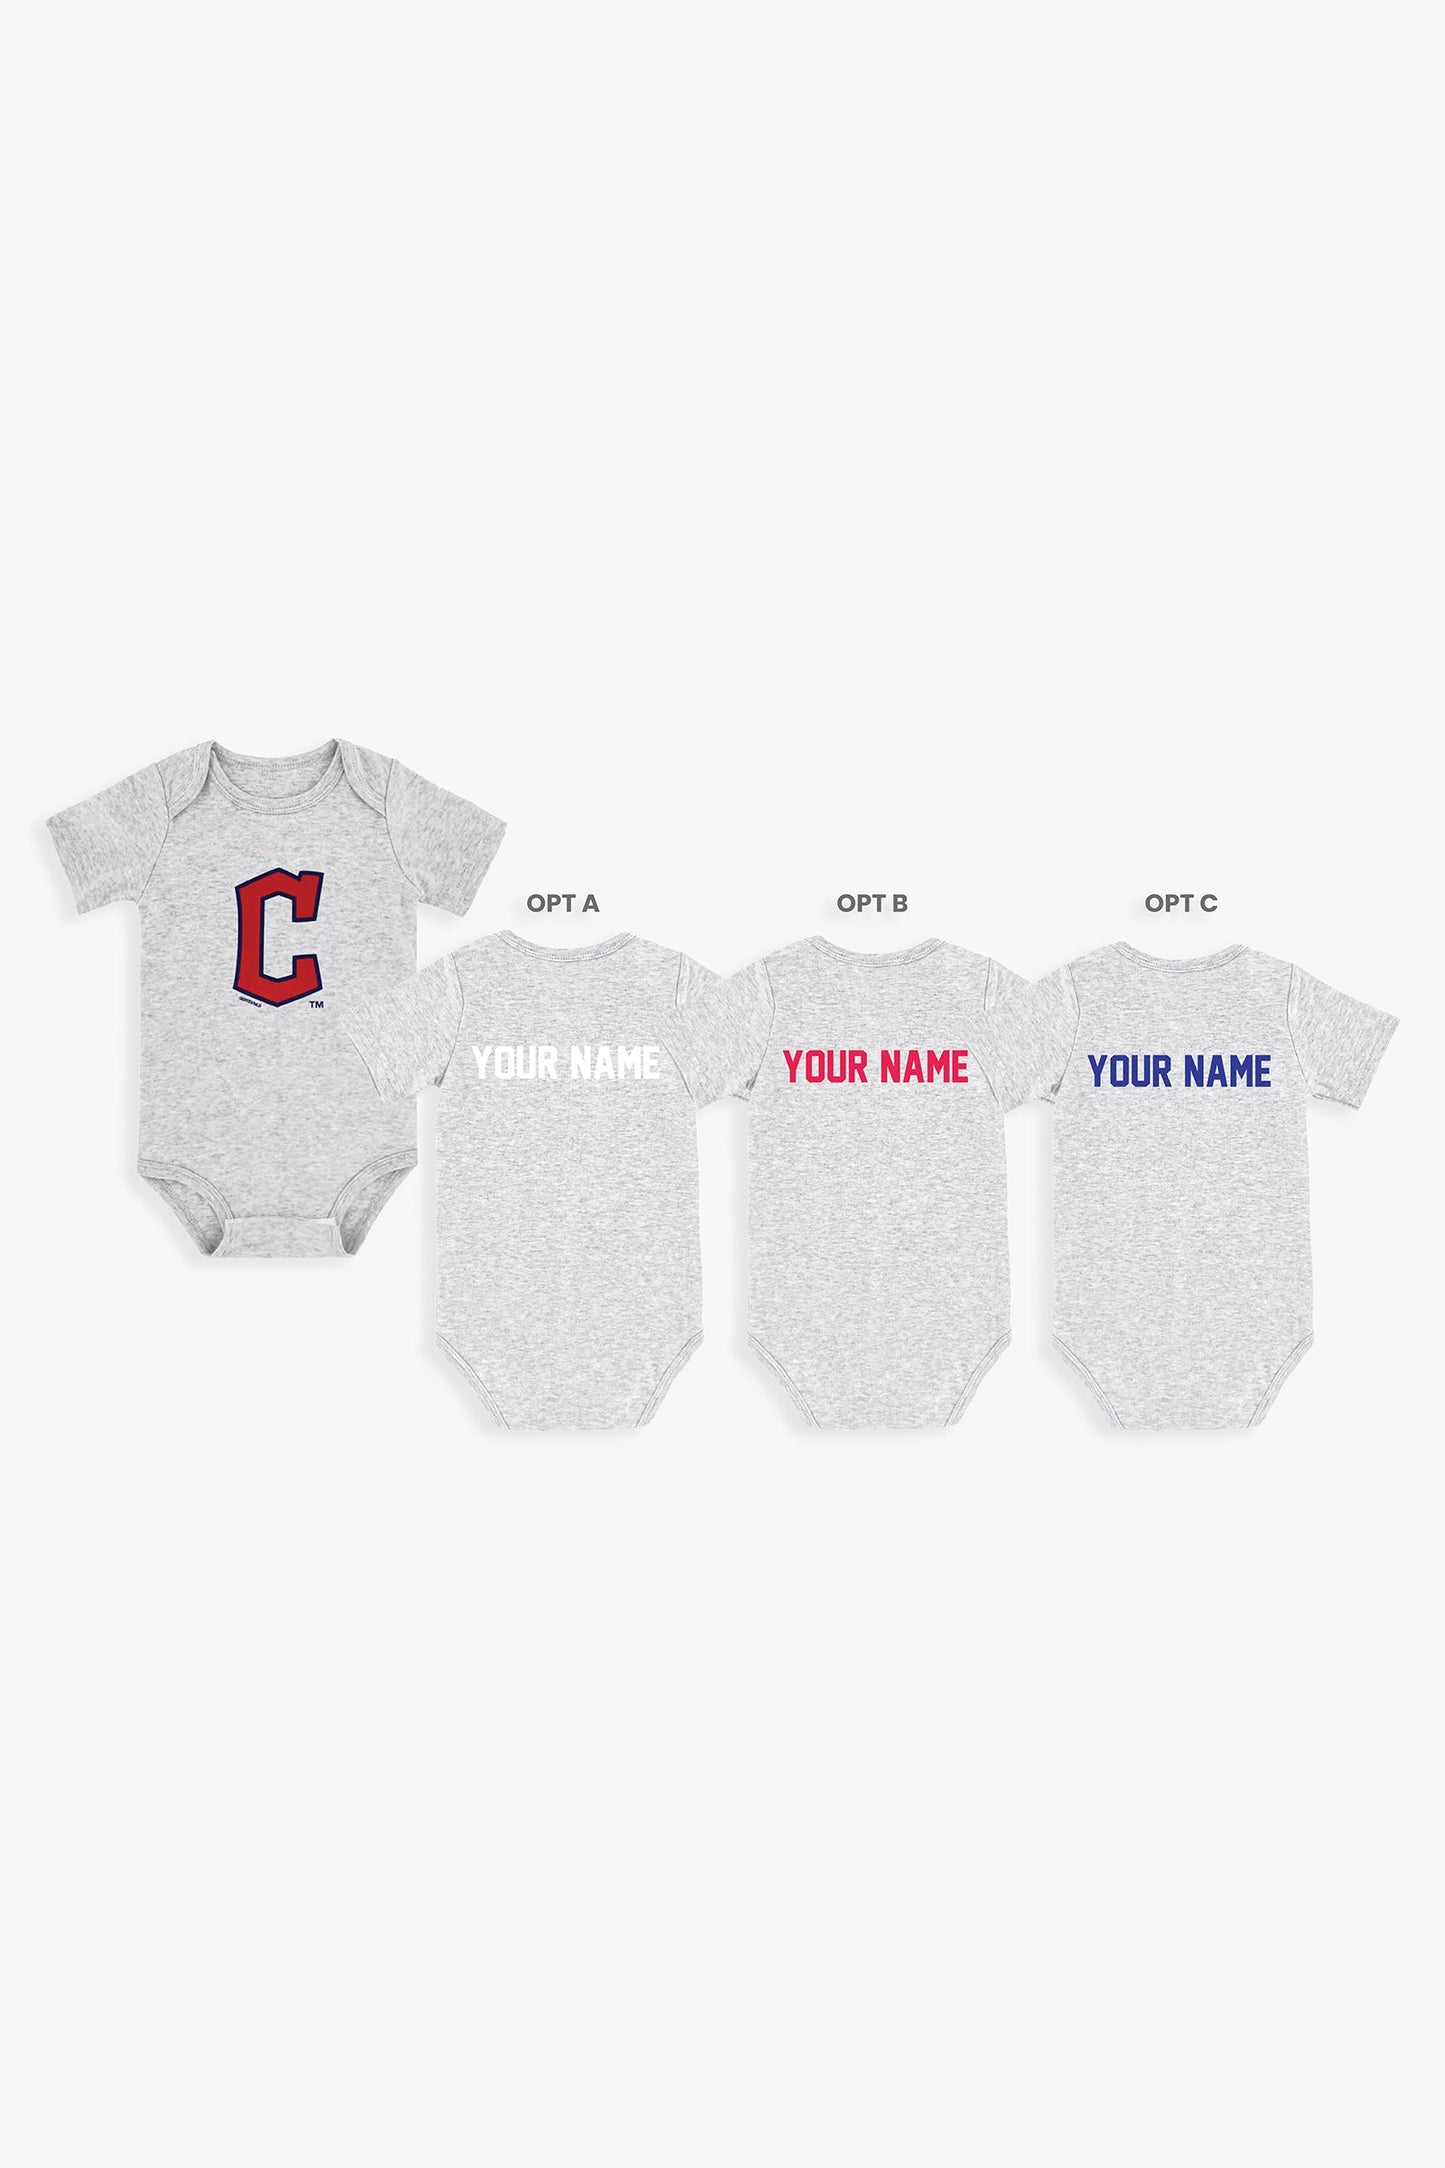 Customizable MLB Baby Onesie Bodysuit in Grey (9-12 Months)